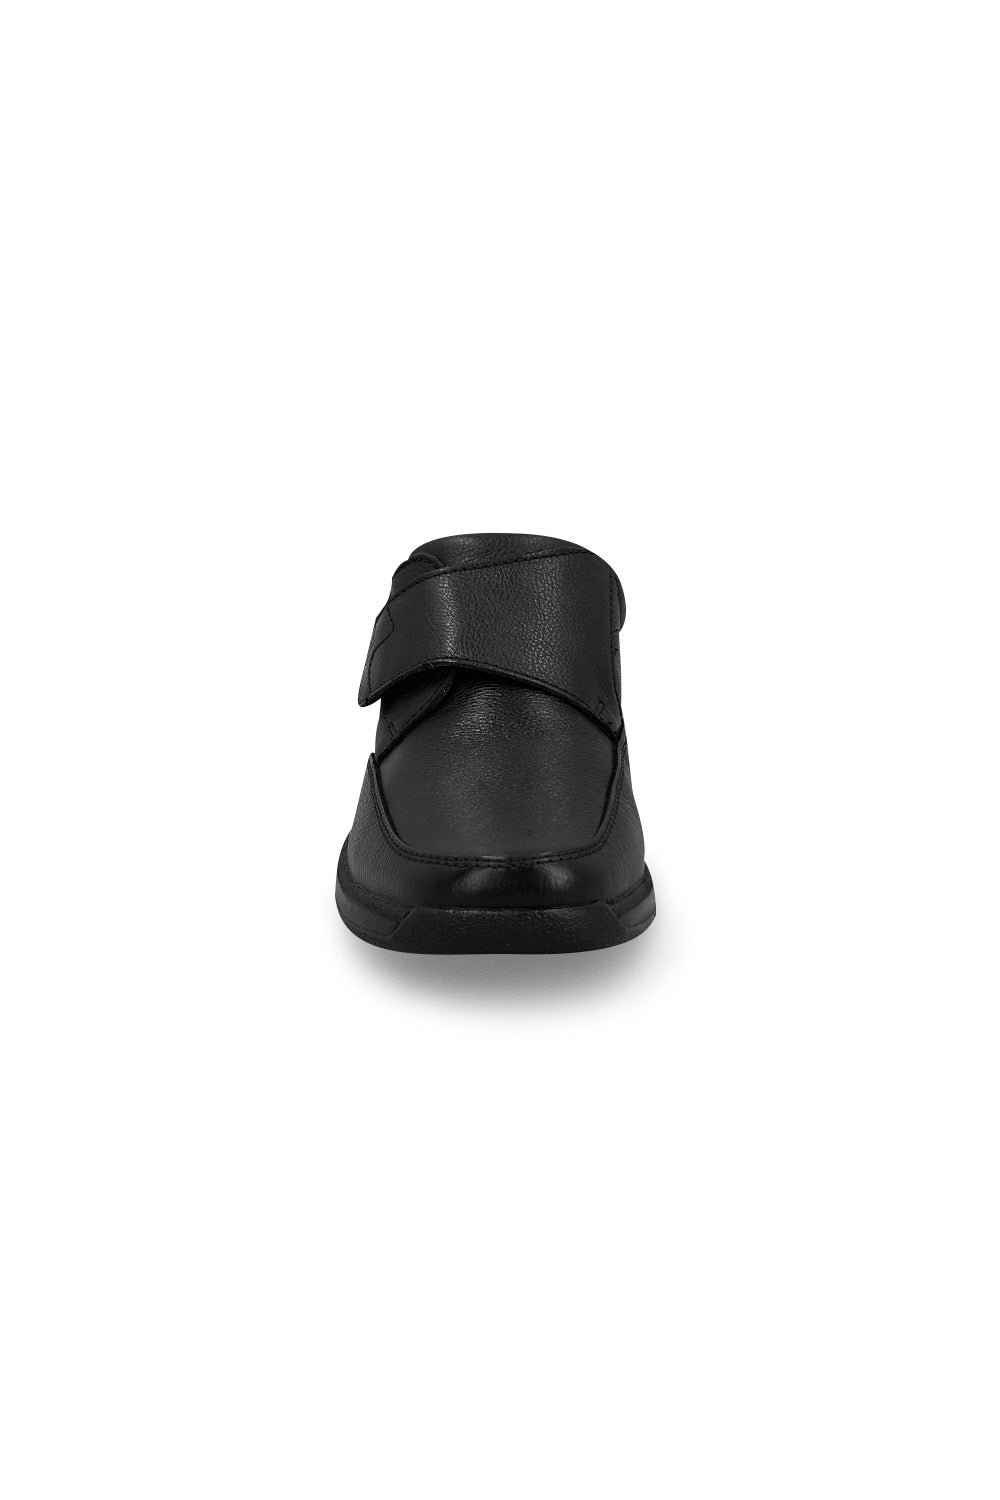 Zapato Formal FLEXI para Hombre Ajuste Velcro Negro Mundo Terra